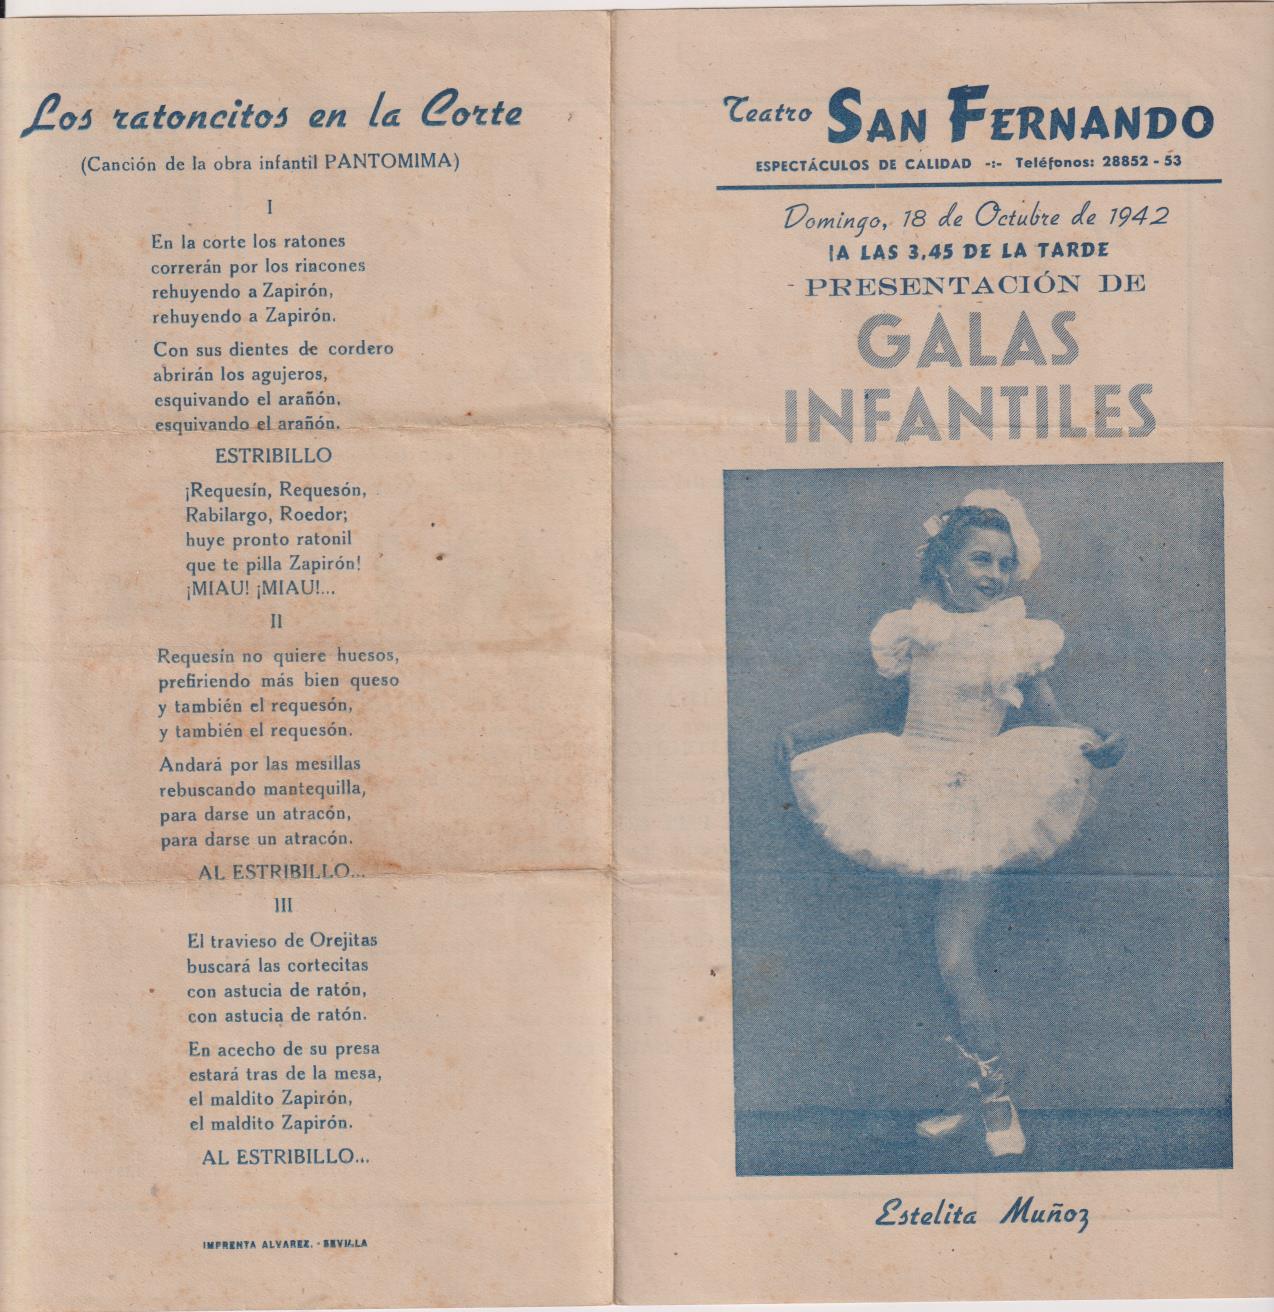 Teatro San Fernando. Galas Infantiles. 18 de Octubre de 1942